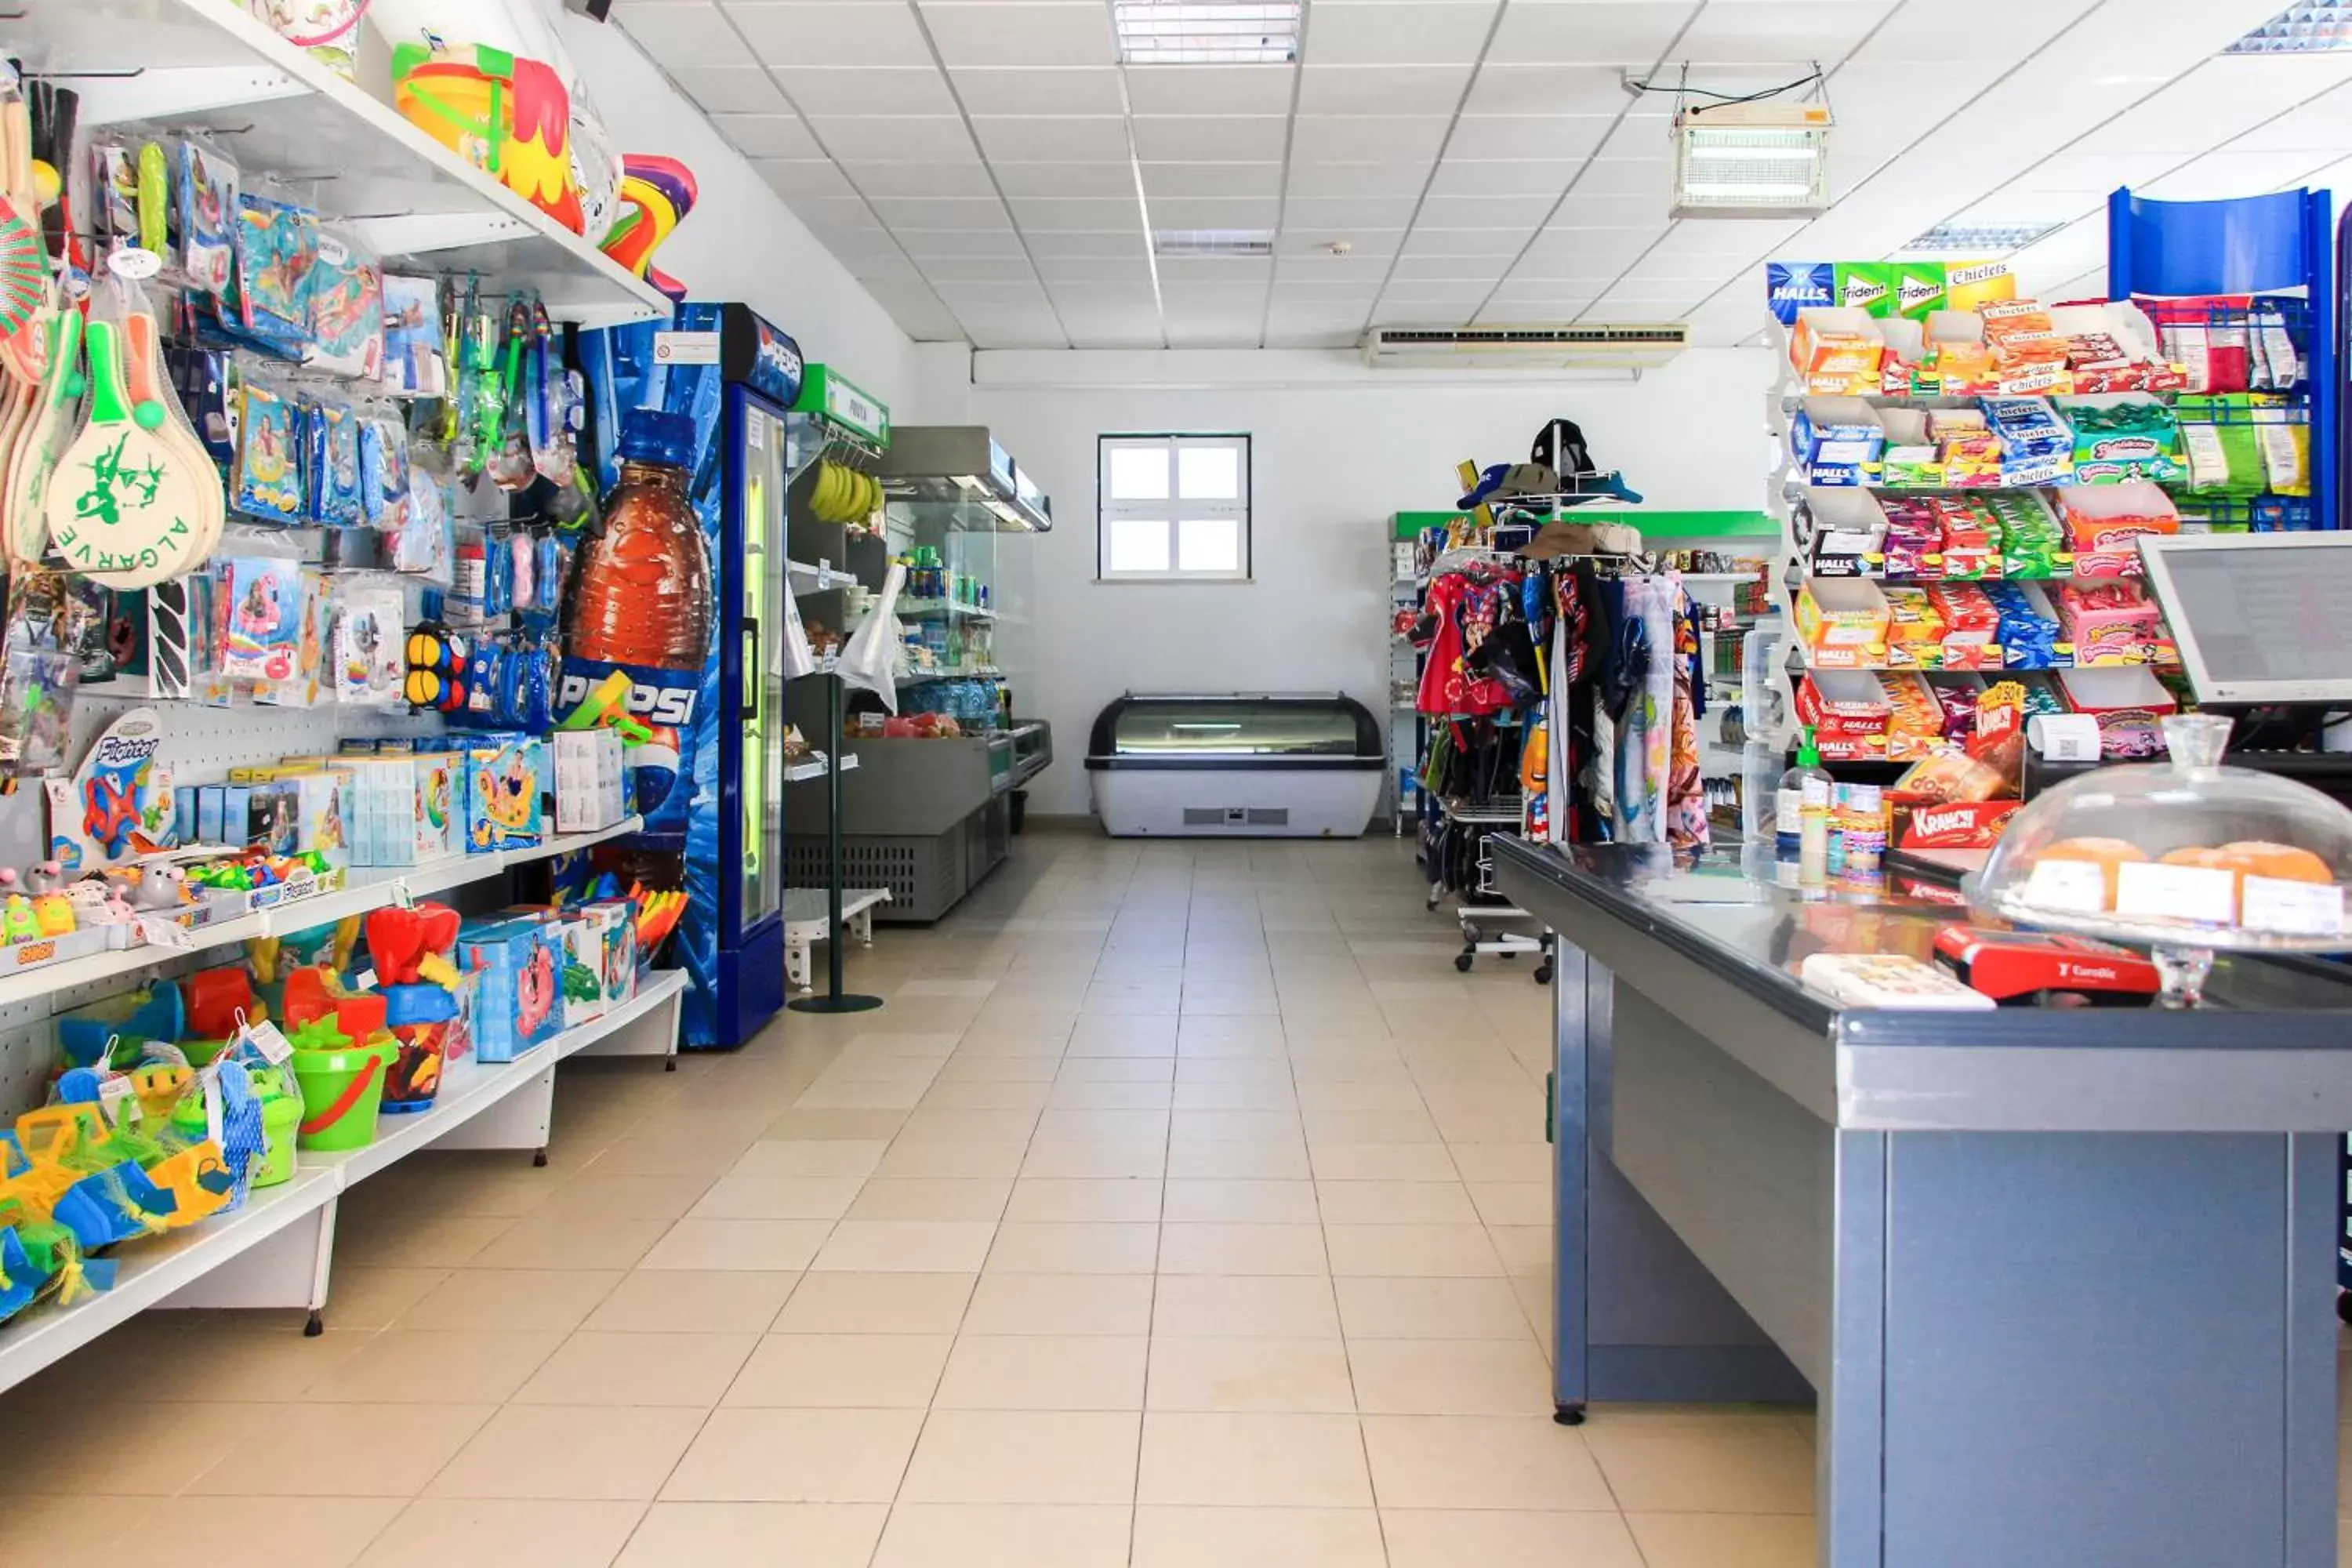 Supermarket/grocery shop, Supermarket/Shops in Vitor's Plaza